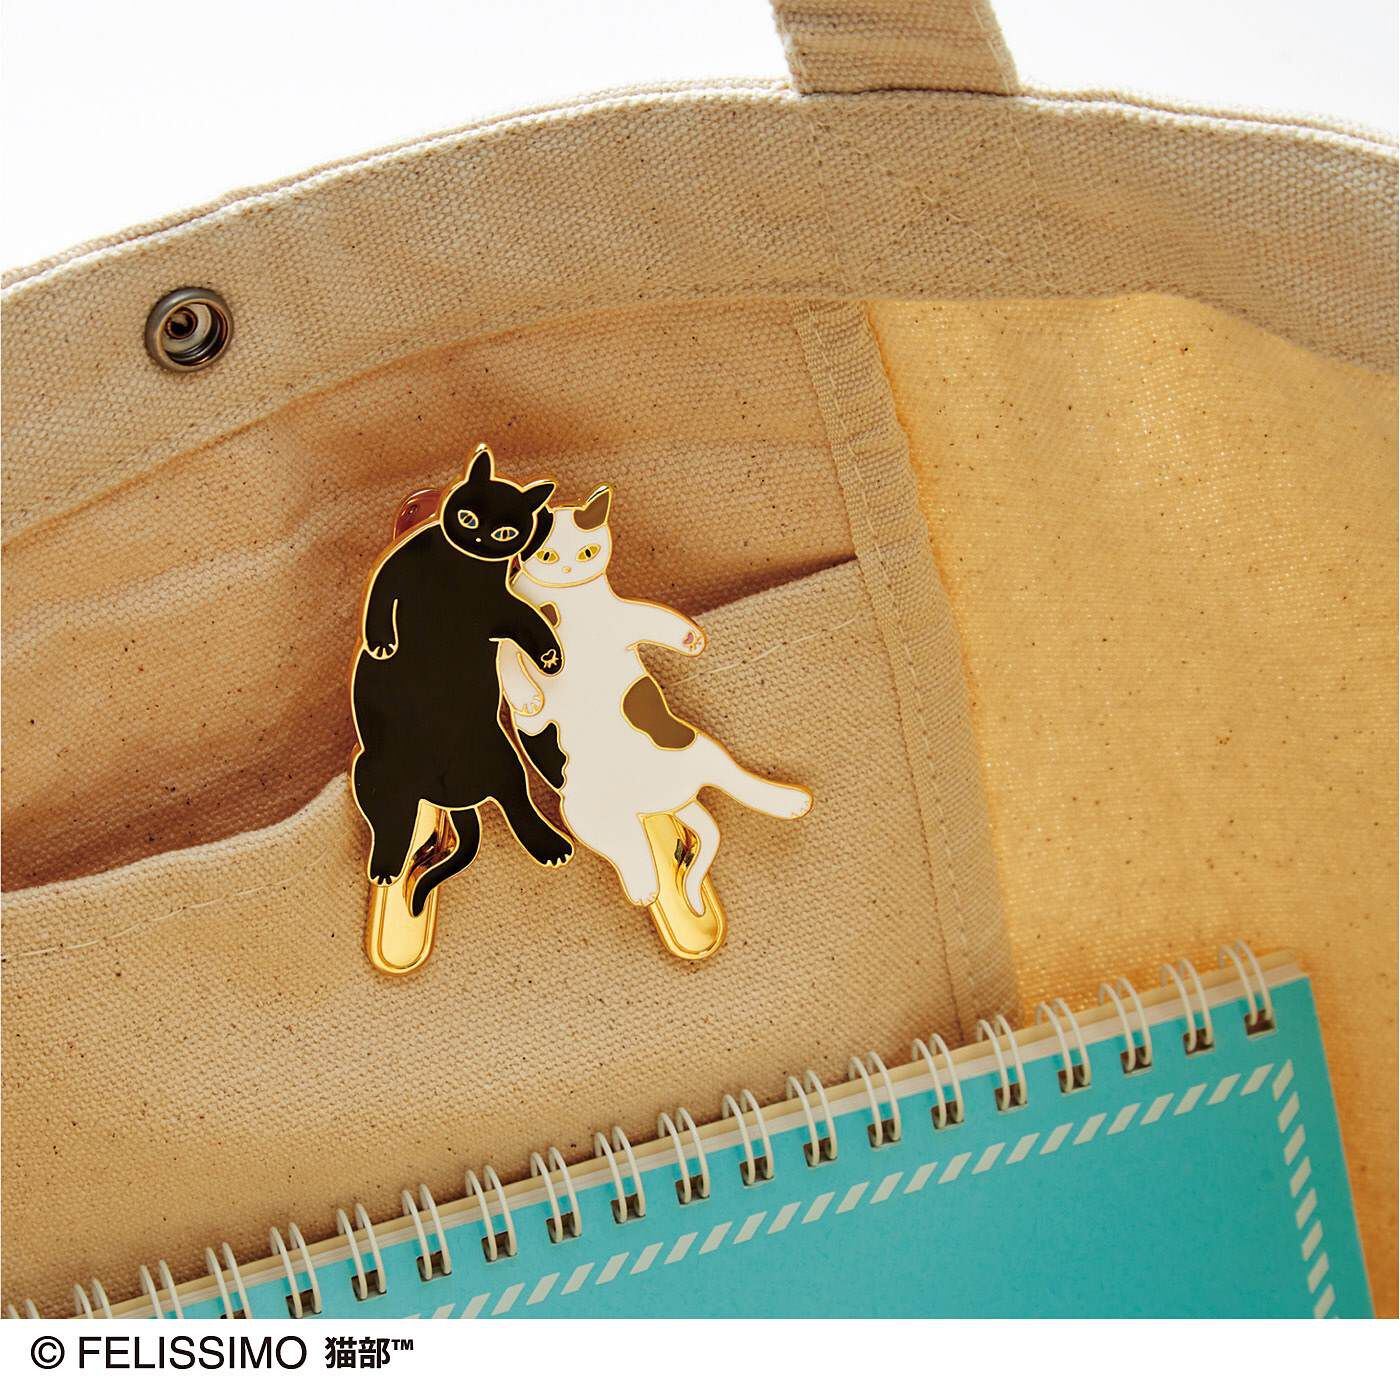 猫部|猫さんのおなかをナデナデすると瞬時に発見できる　キークリップの会|バッグの内ポケットに挟んで、かぎを収納すれば安心。